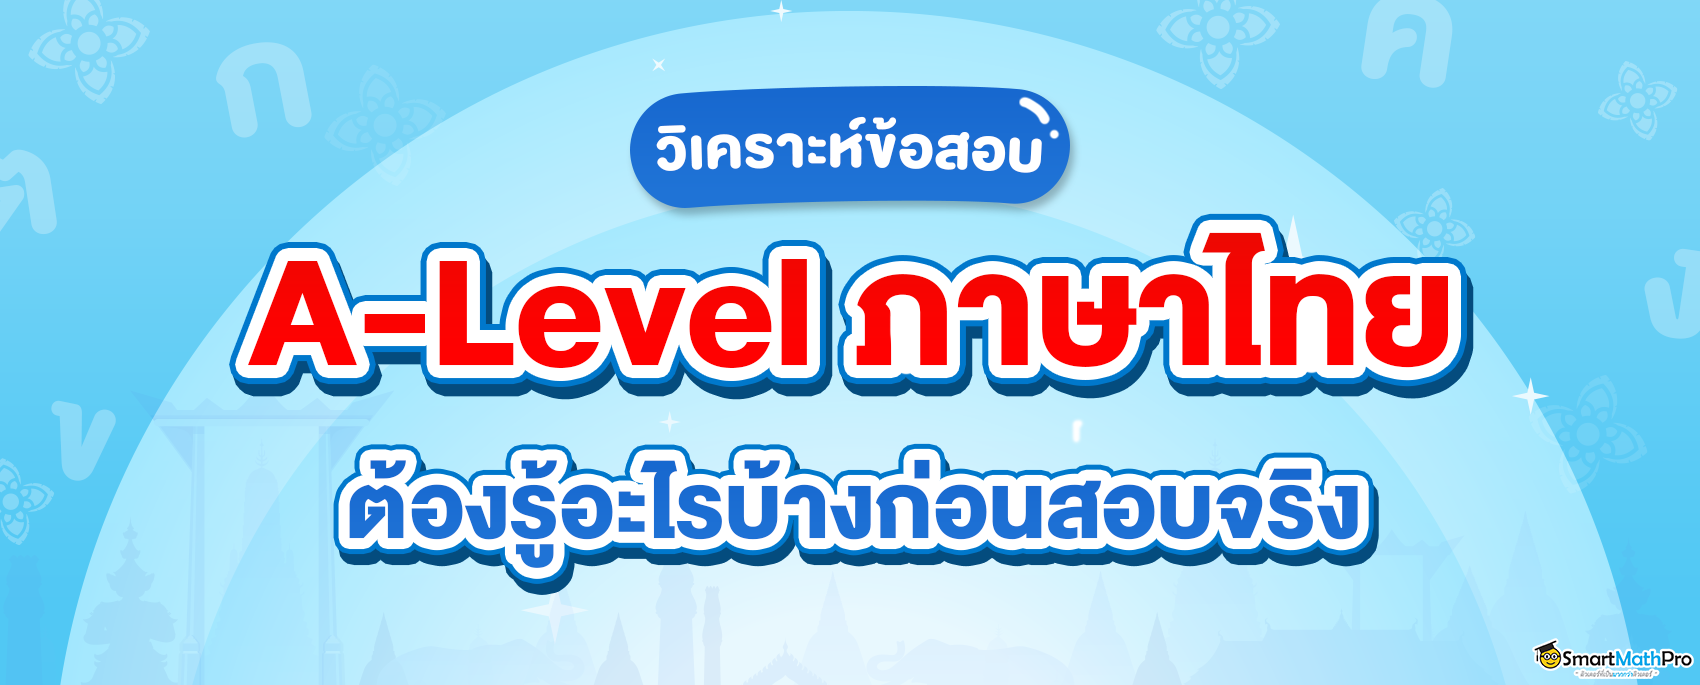 ทุกสิ่งที่ต้องรู้ก่อนสอบ A-Level ภาษาไทย